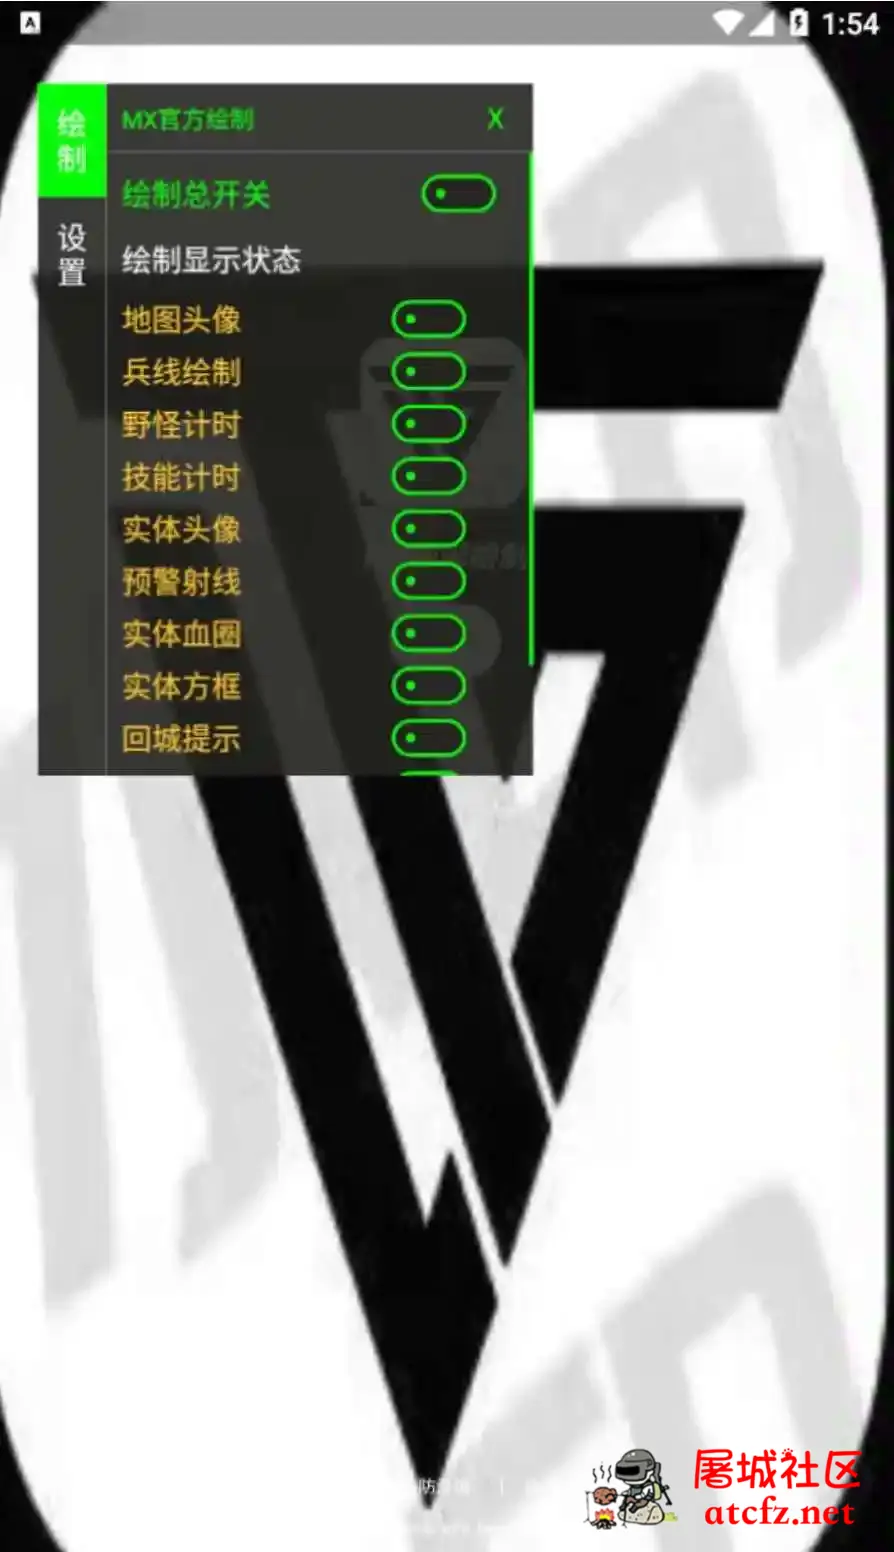 王者荣耀MX绘制透视CD野怪计时插件破解版 屠城辅助网www.tcfz1.com3851